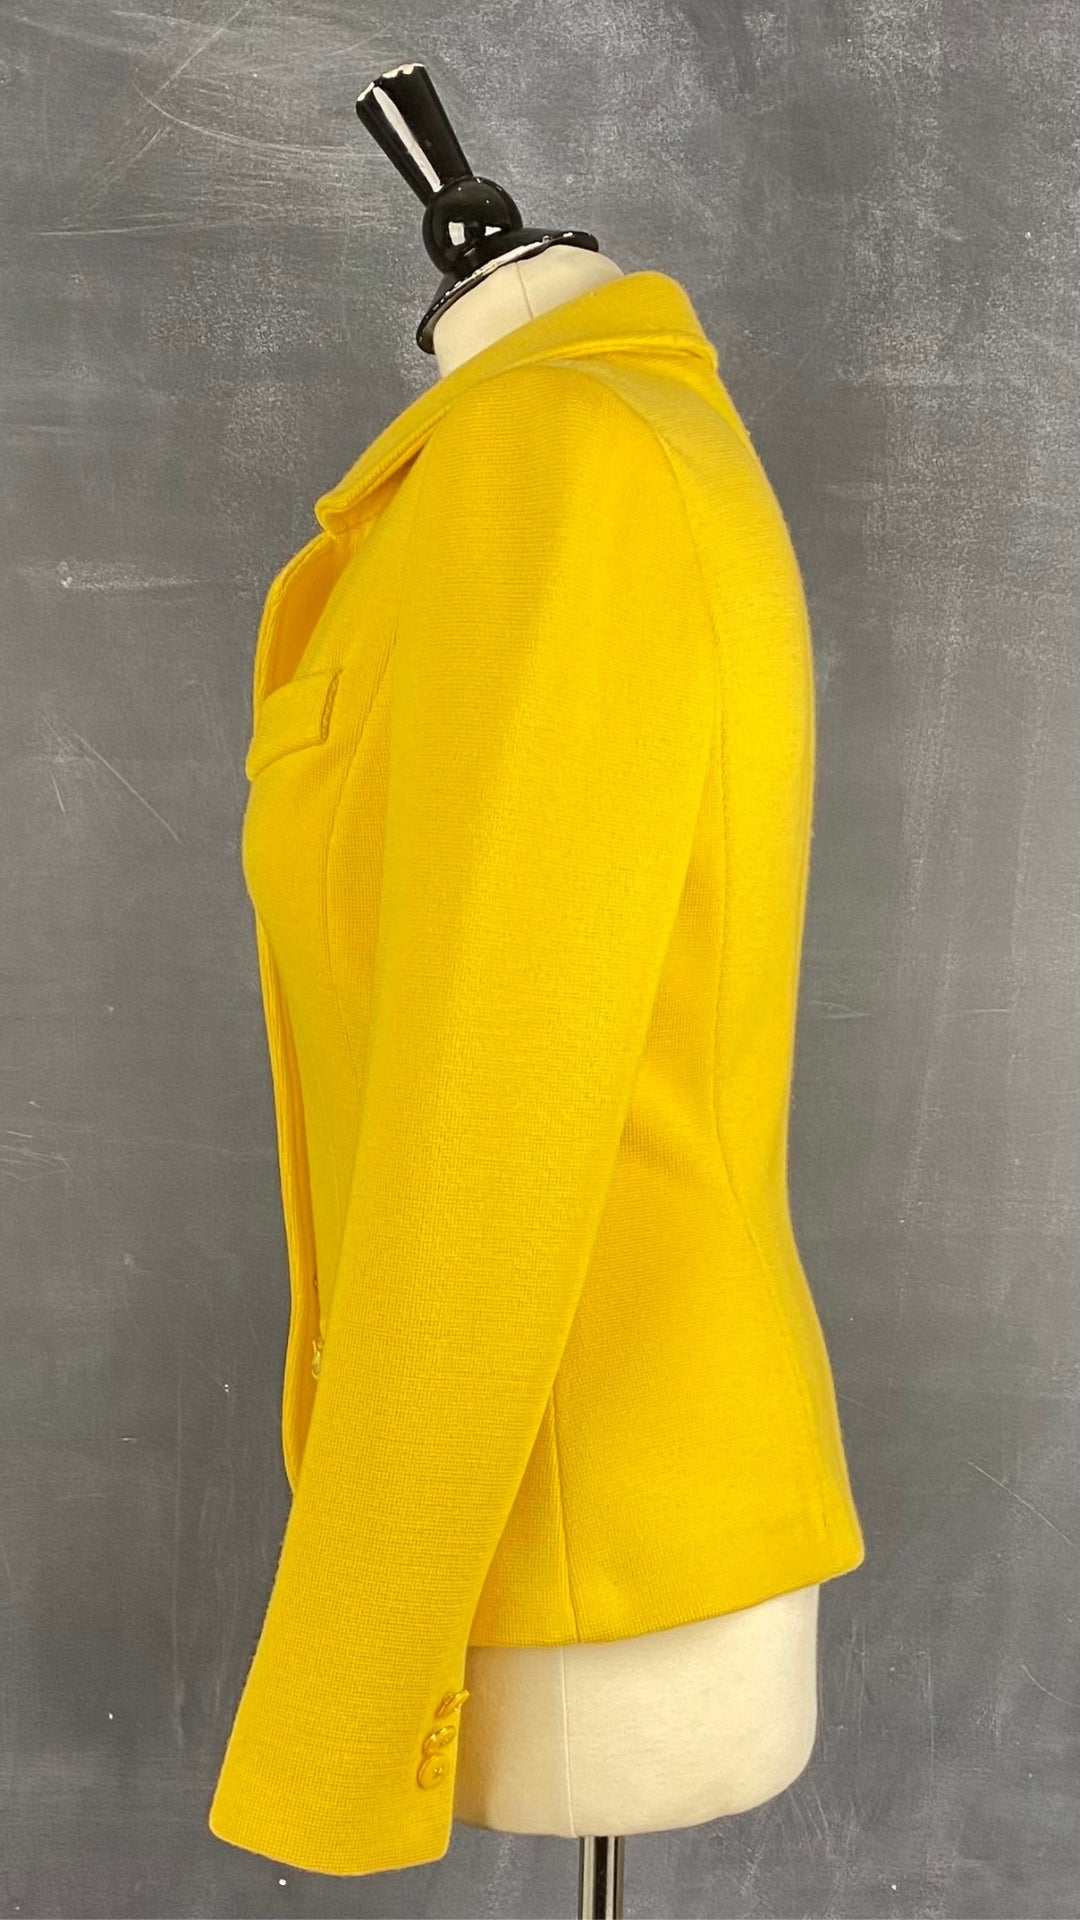 Veste style blazer jaune doré en laine Luisa Spagnoli, taille small. Vue de côté.